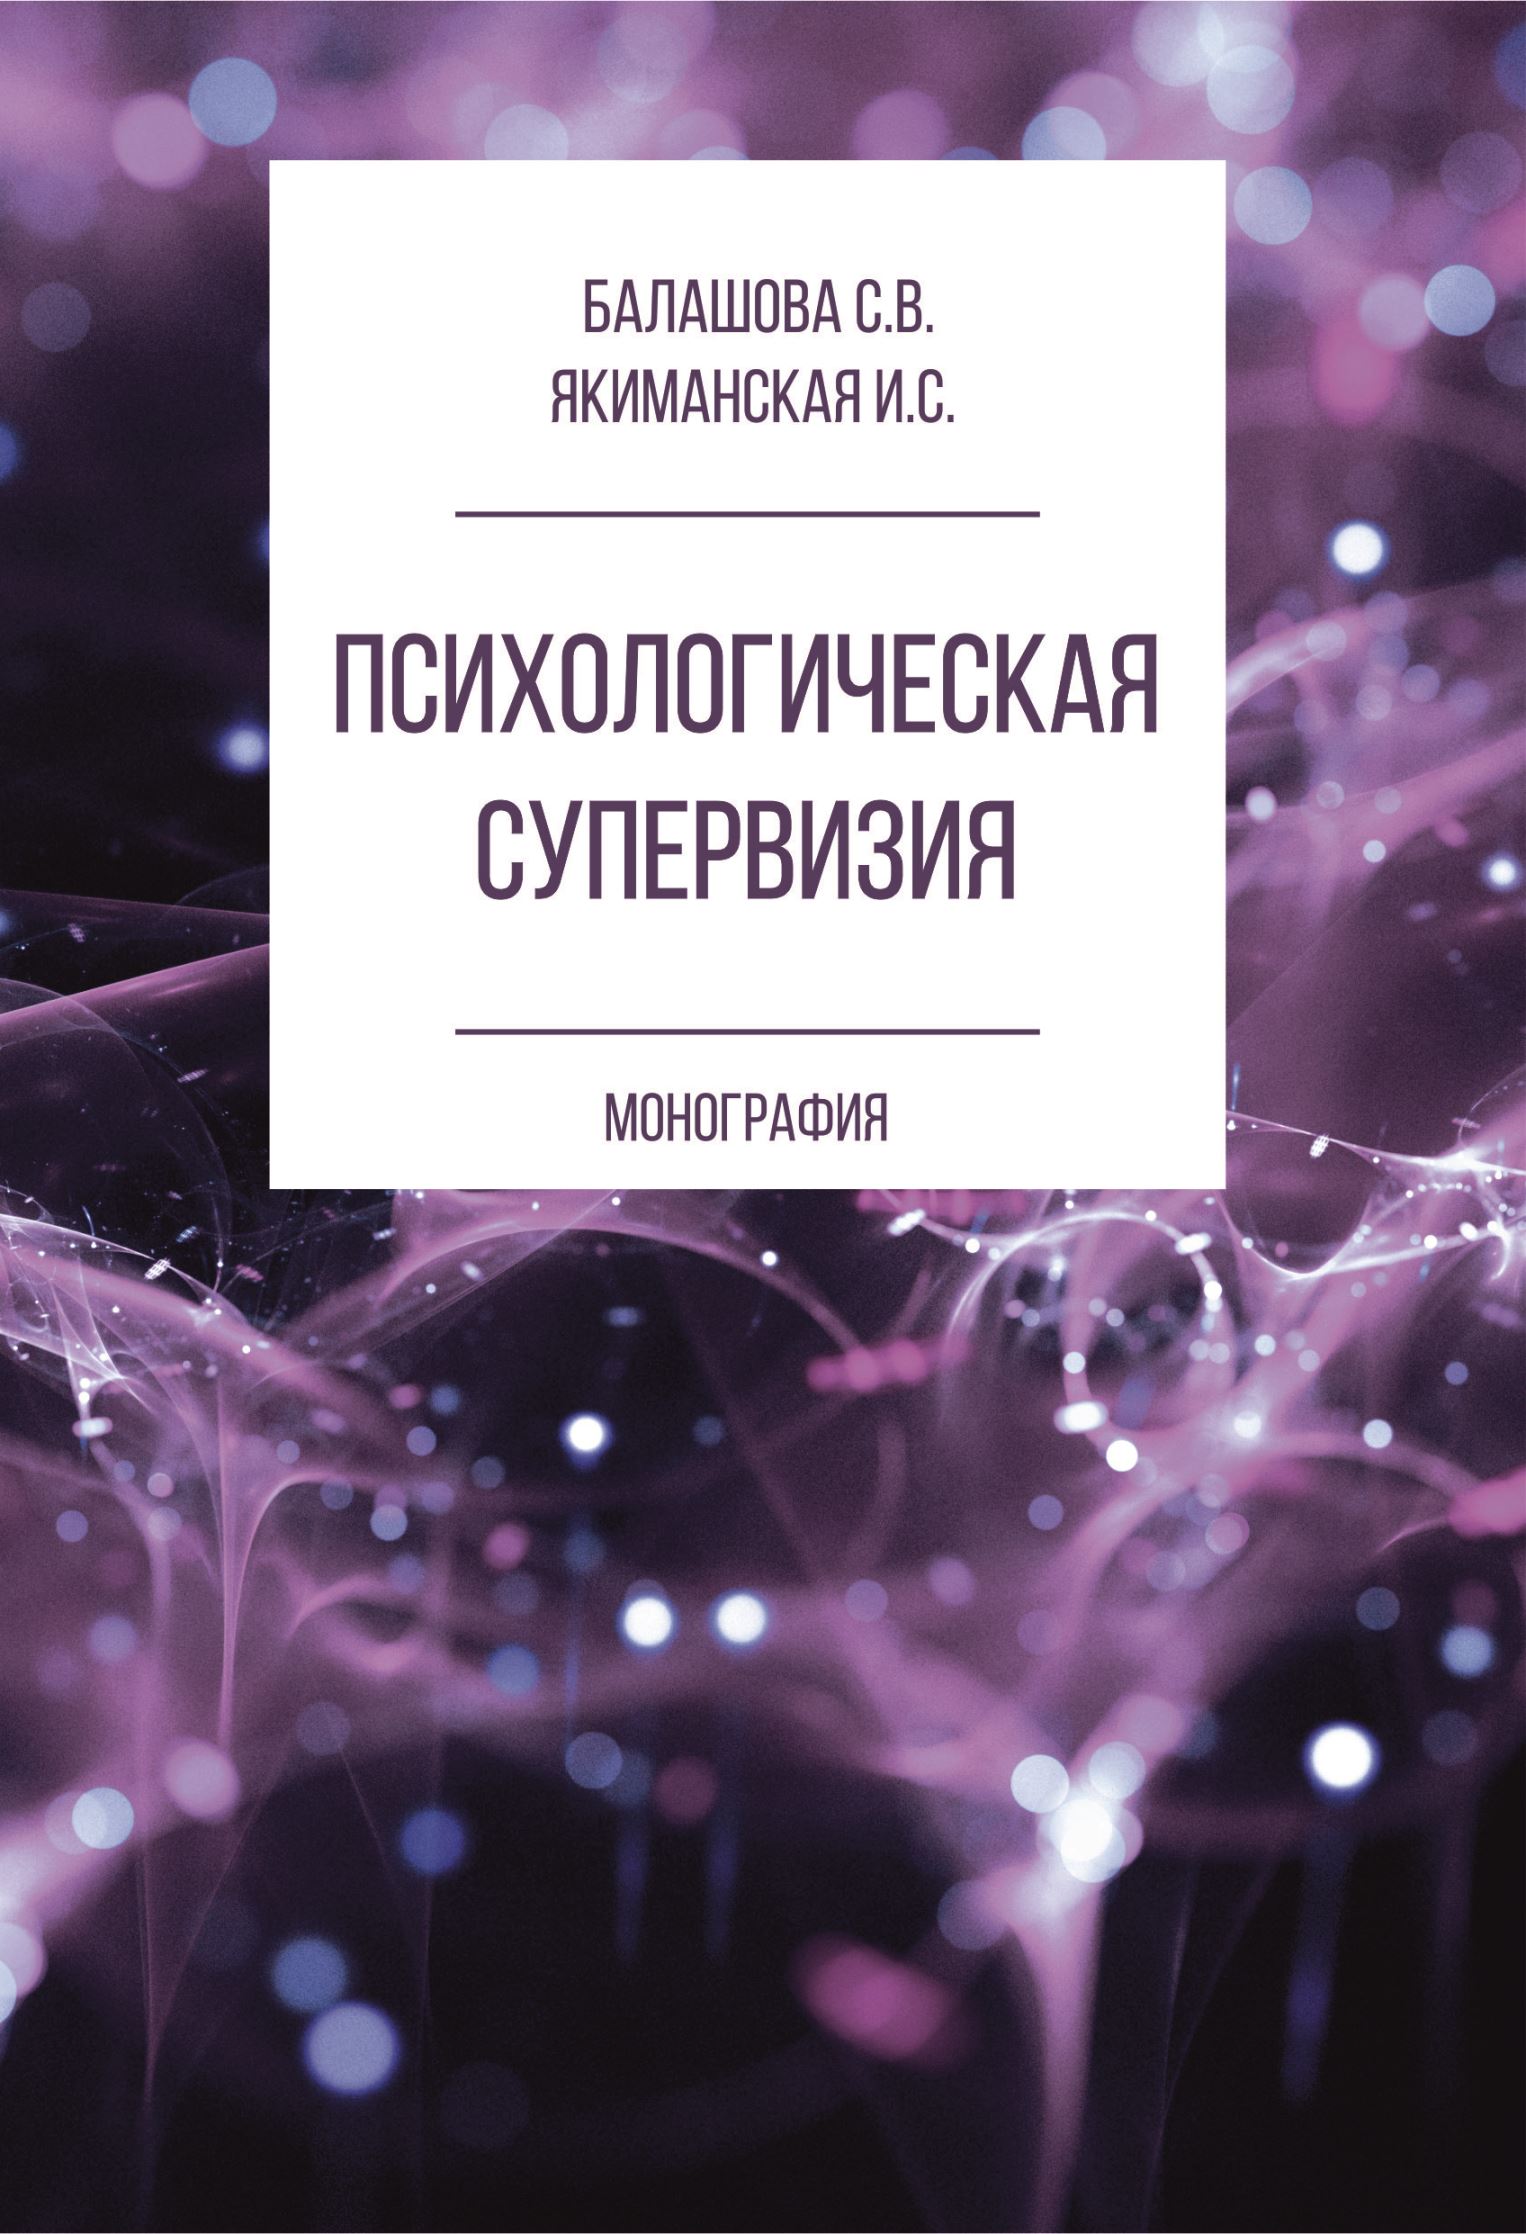 Книга Психологическая супервизия из серии , созданная Ирина Якиманская, Светлана Балашова, может относится к жанру Психотерапия и консультирование, Психотерапия и консультирование. Стоимость электронной книги Психологическая супервизия с идентификатором 38565215 составляет 110.00 руб.